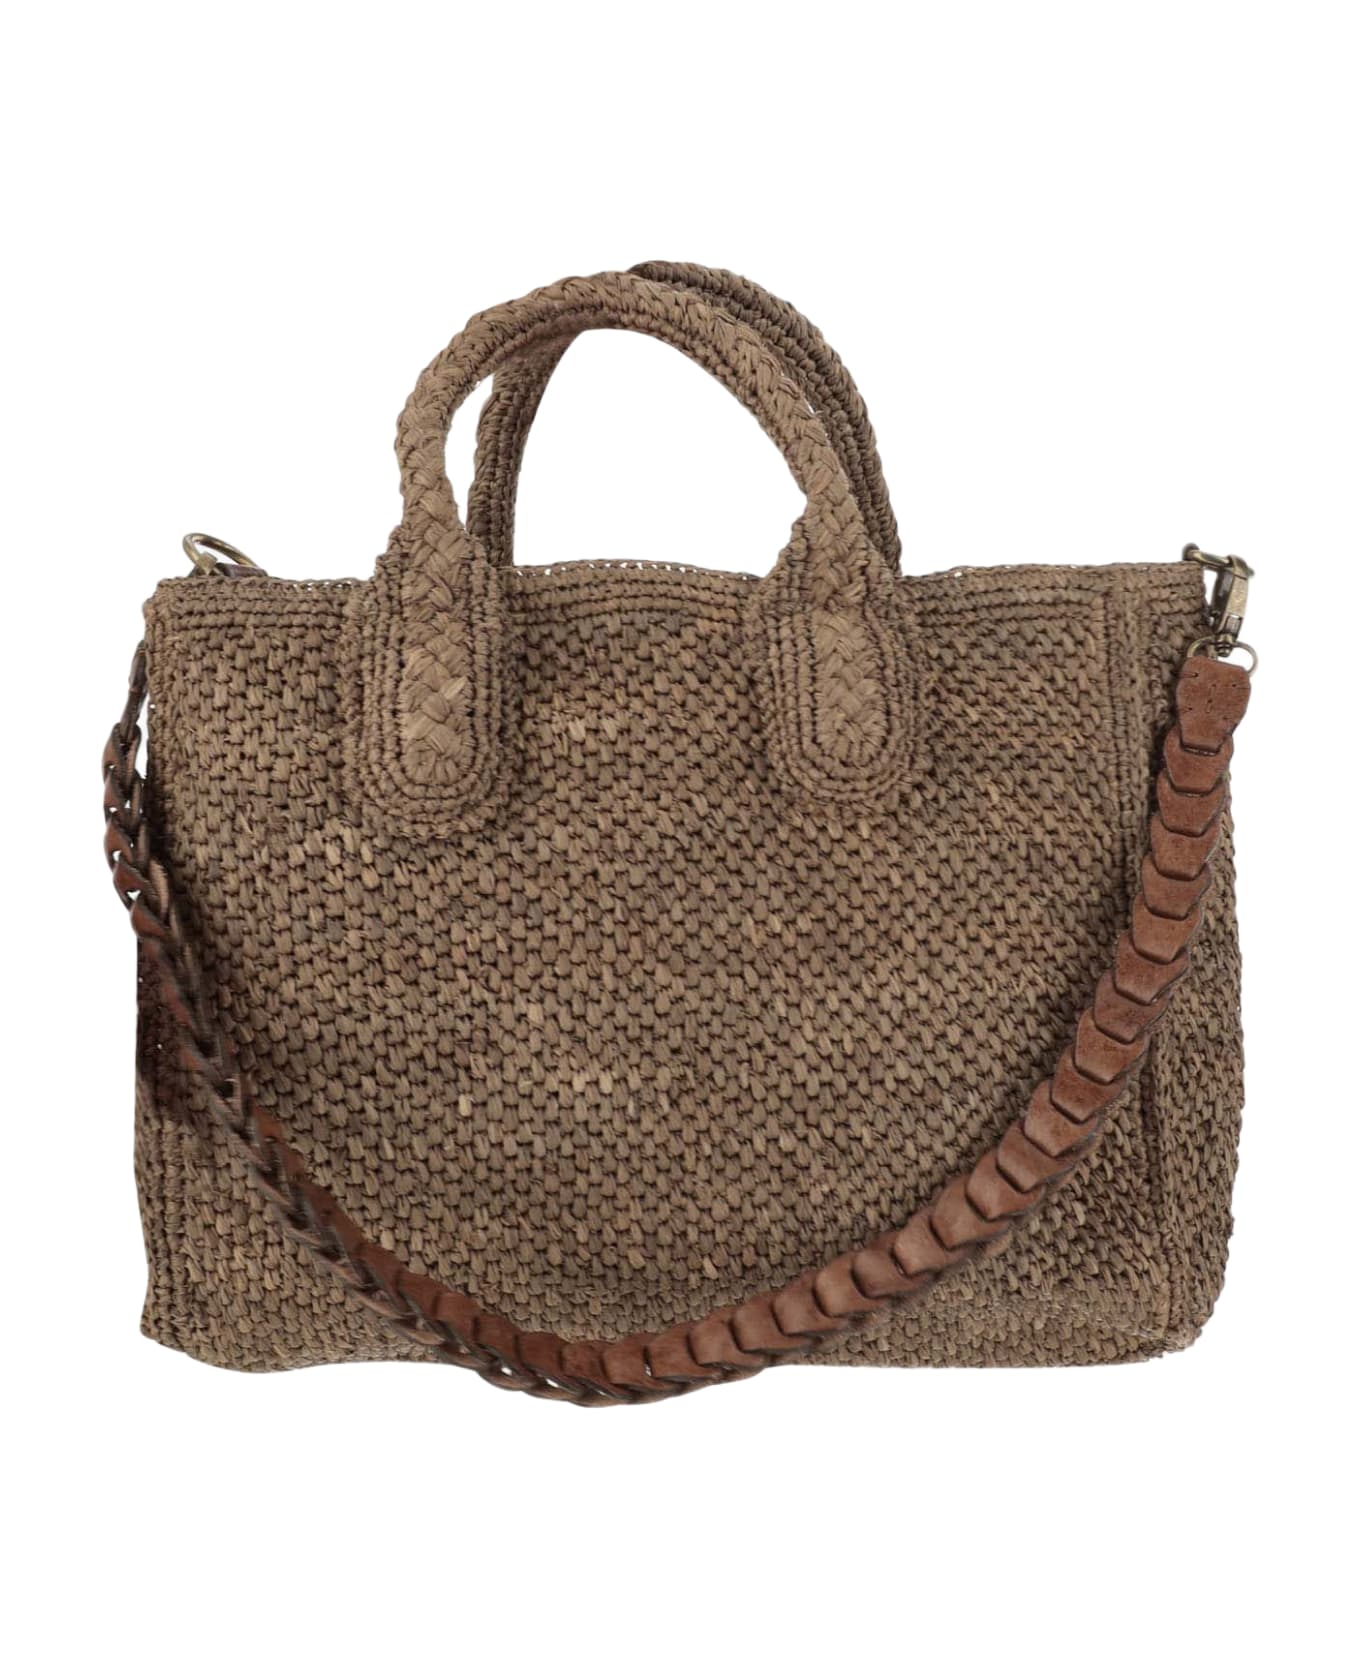 Ibeliv Raffia Bag With Leather Details - Dark tea